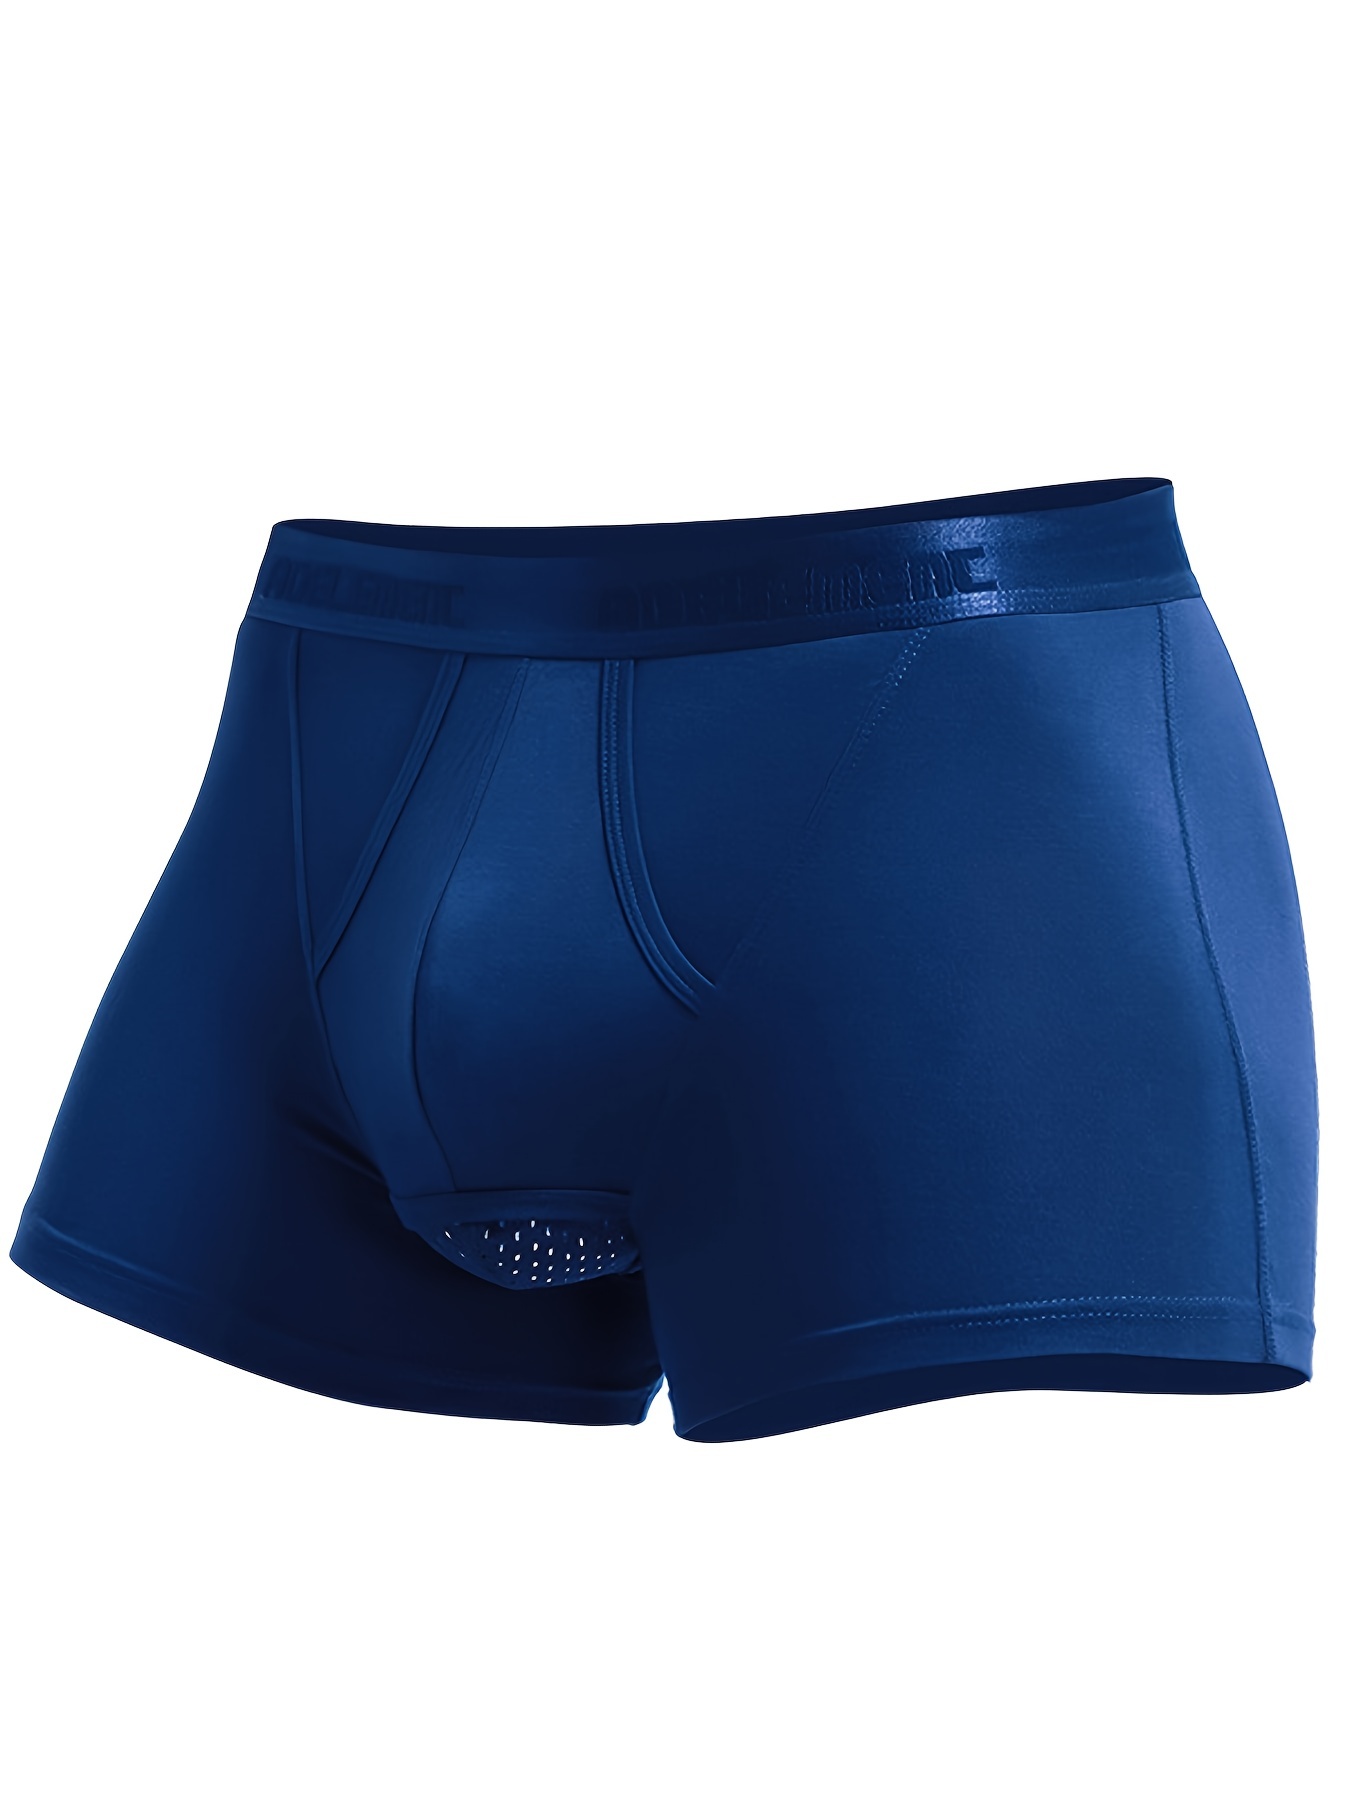 Sports Underwear Men Elephant Nose Style Trunks Soft Cotton Boxers Briefs  Breathable Bulge Pouch Underpants Shorts Blue